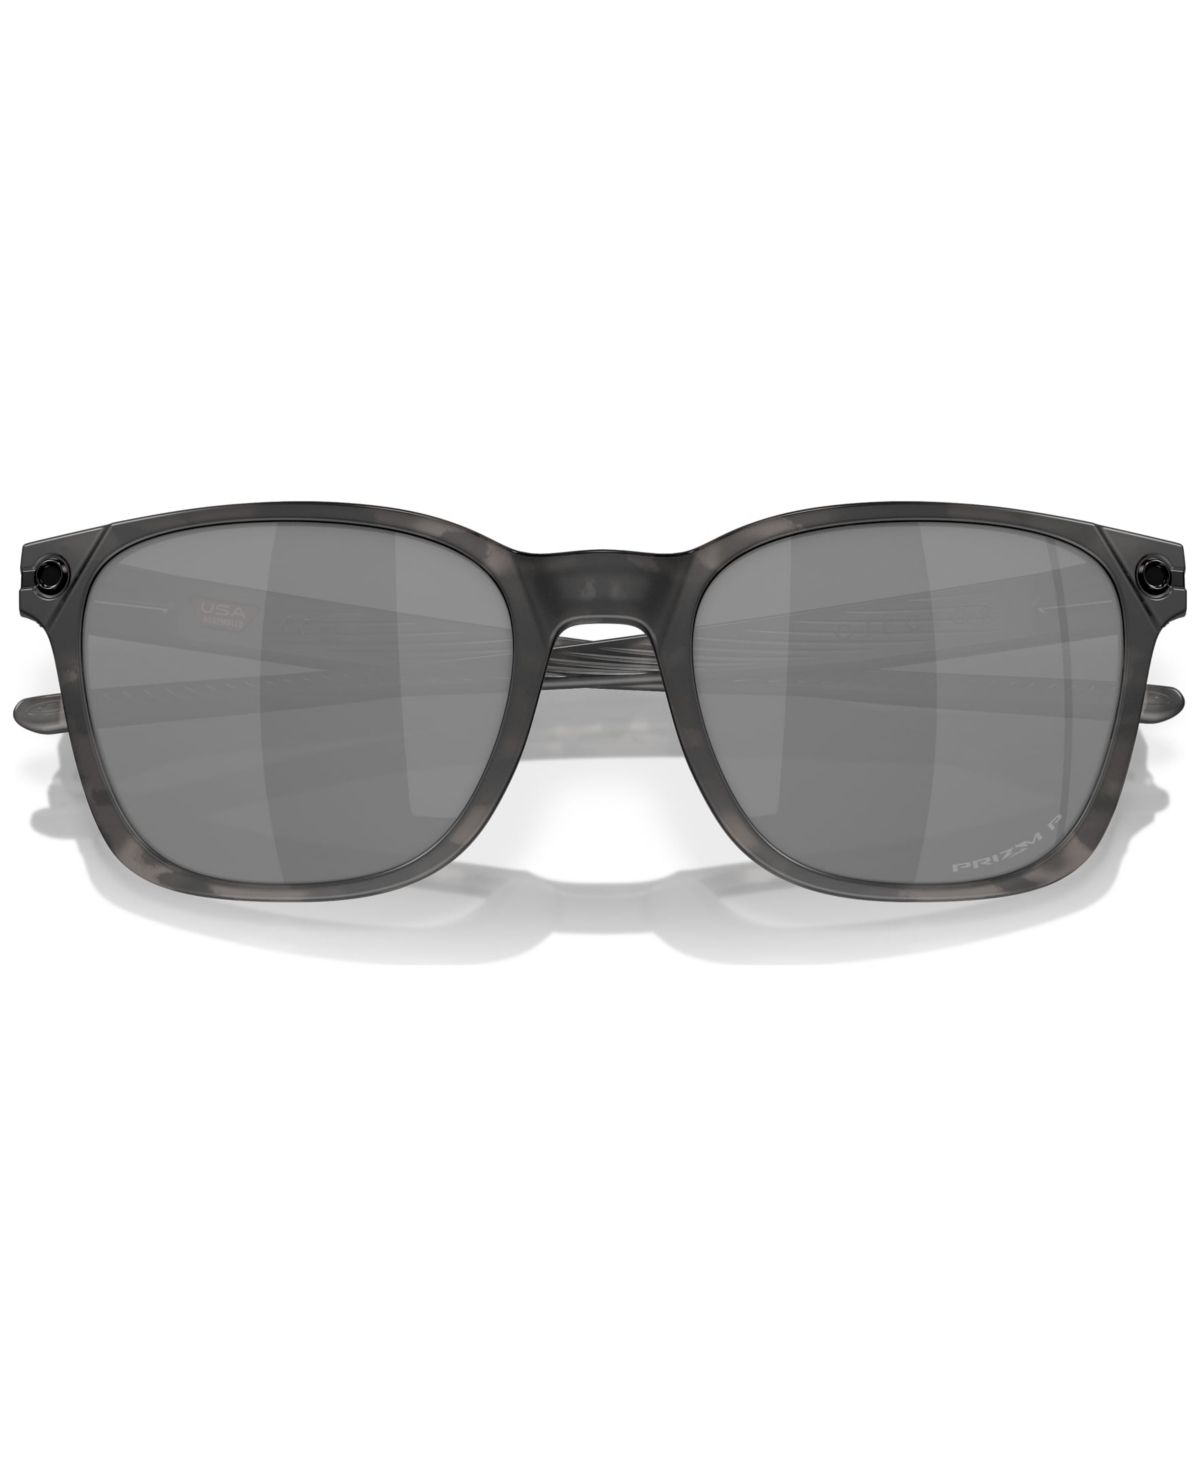 Men's Polarized Sunglasses, Objector In Matte Black Tortoise